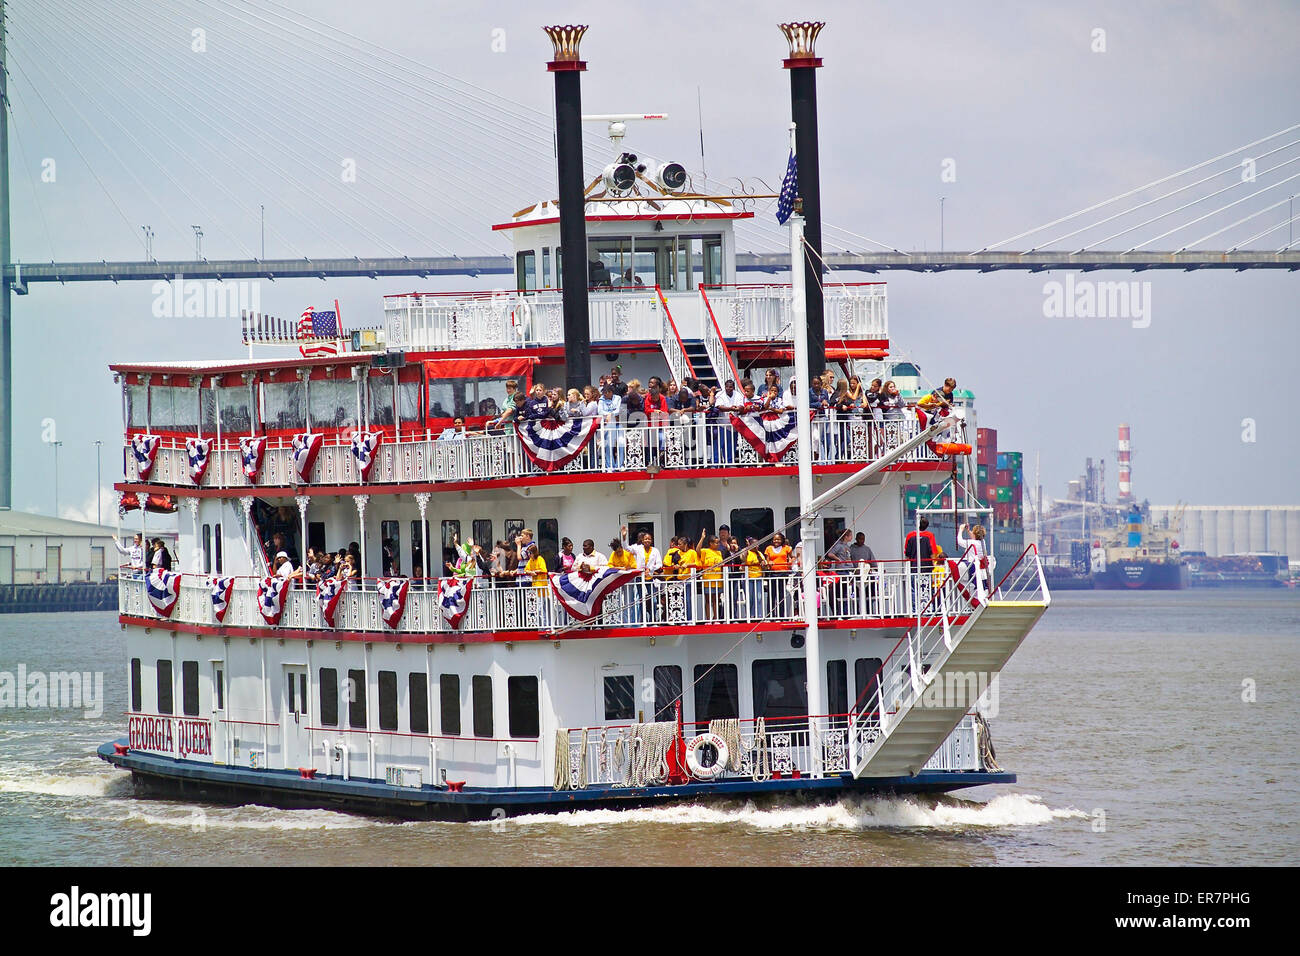 Schülerinnen und Schüler erhalten eine lokale Geschichtsstunde an Bord einer Old-Time Riverboat, das ist die Erforschung des Savannah River in Georgia, USA. Stockfoto